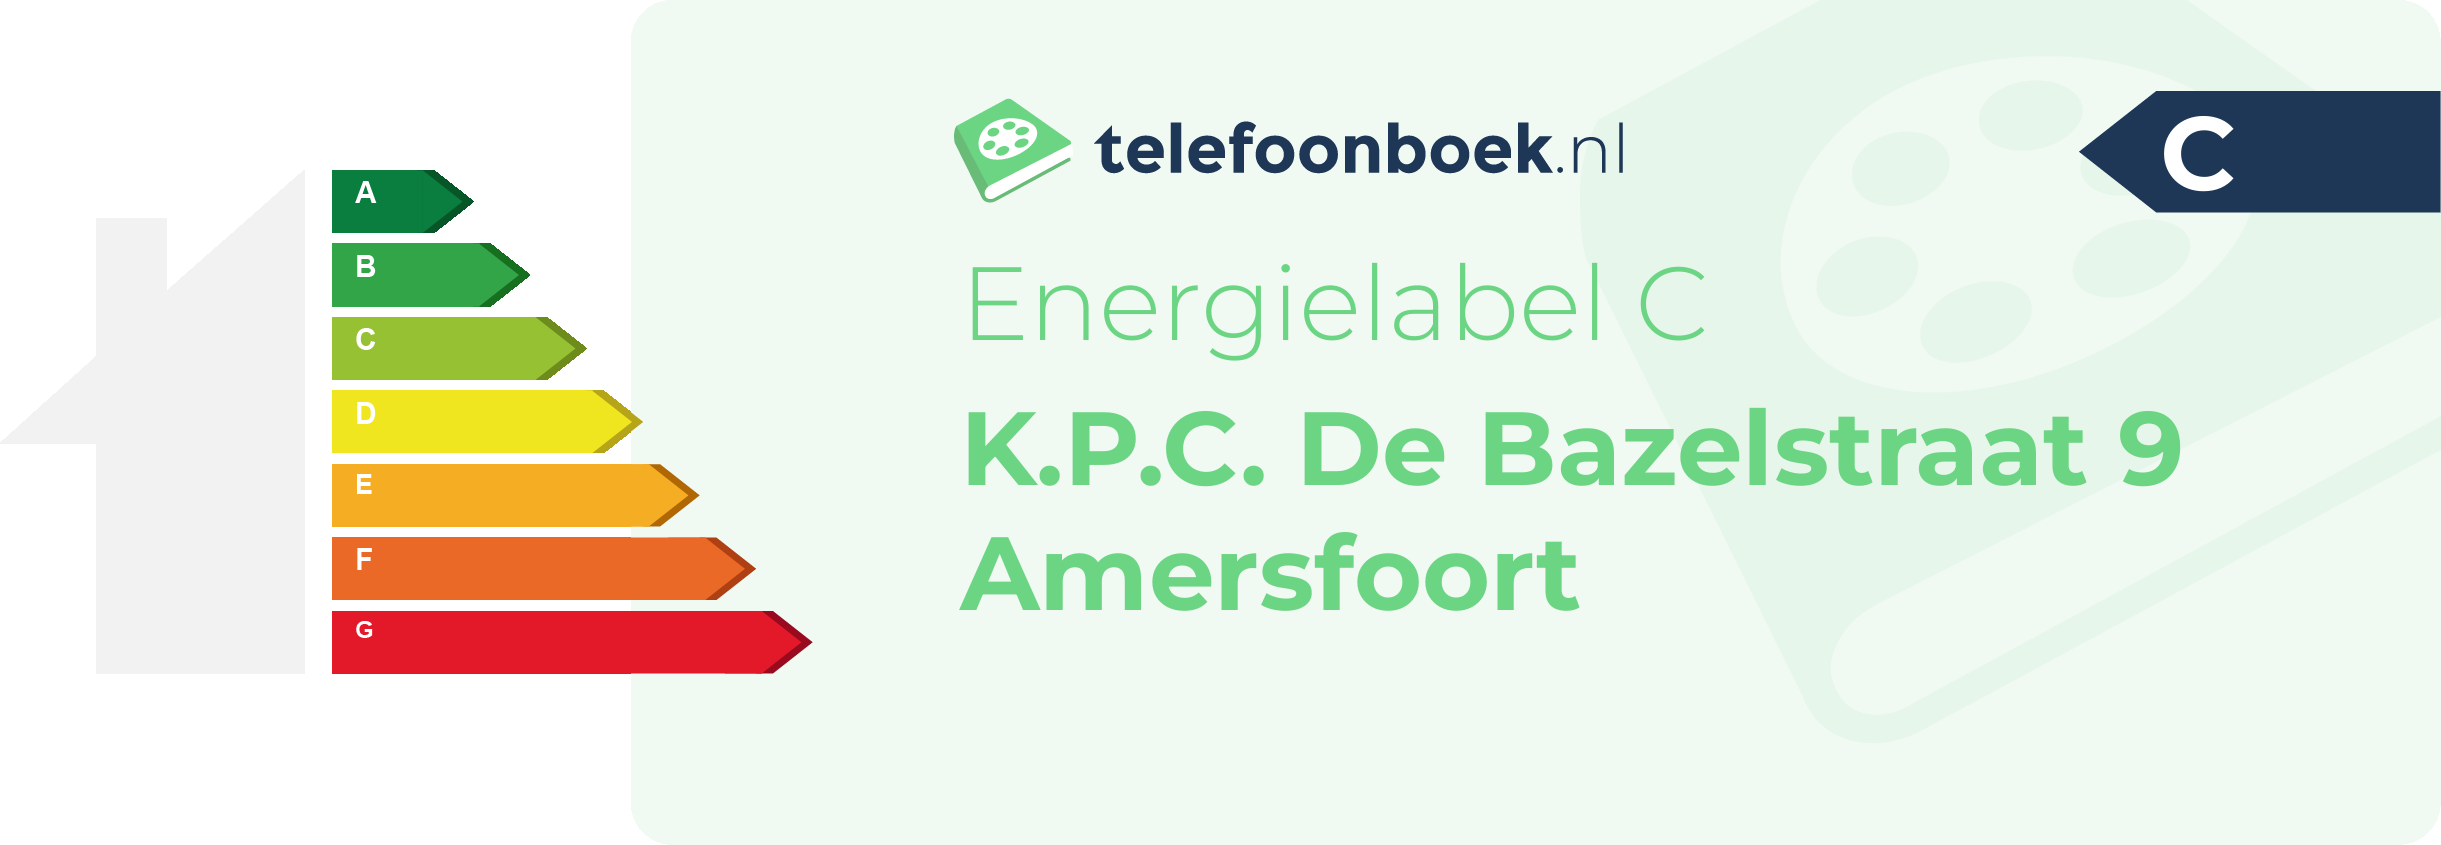 Energielabel K.P.C. De Bazelstraat 9 Amersfoort